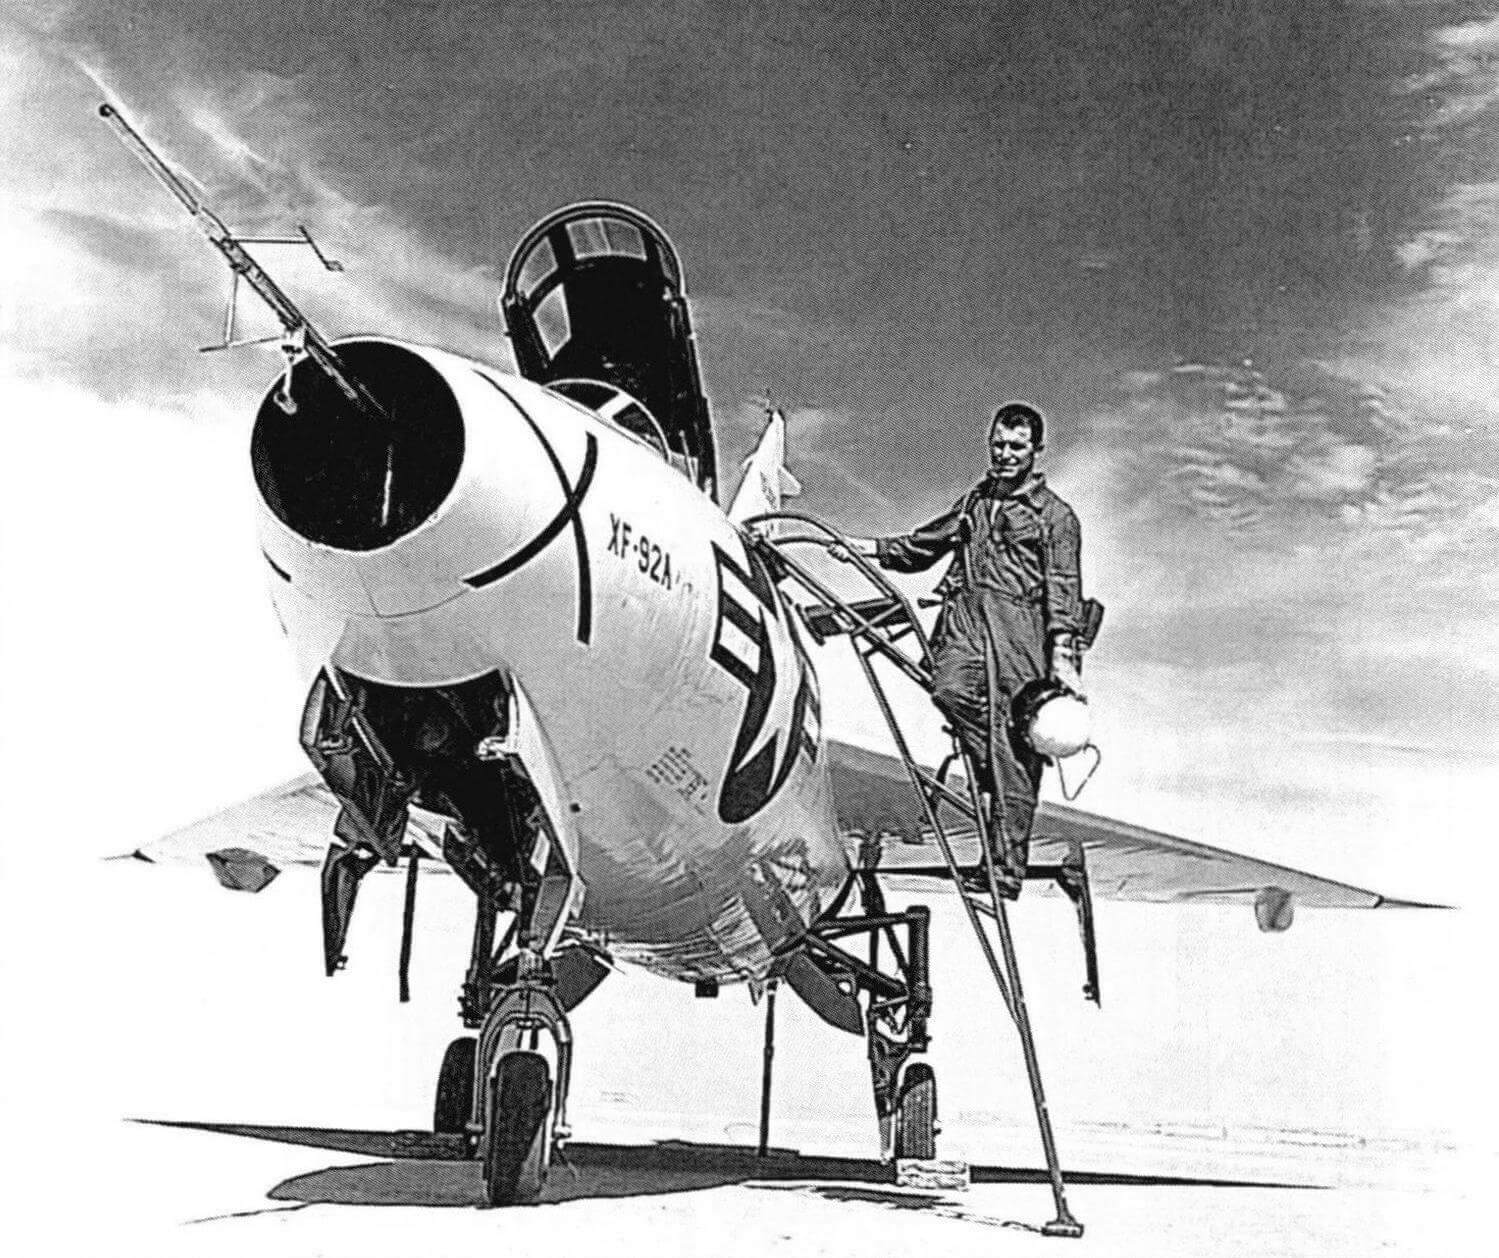 Модель ХF-92А перед взлетом. На трубке ПВД видны громоздкие датчики углов атаки и скольжения. Основное колесо убирается в крыло